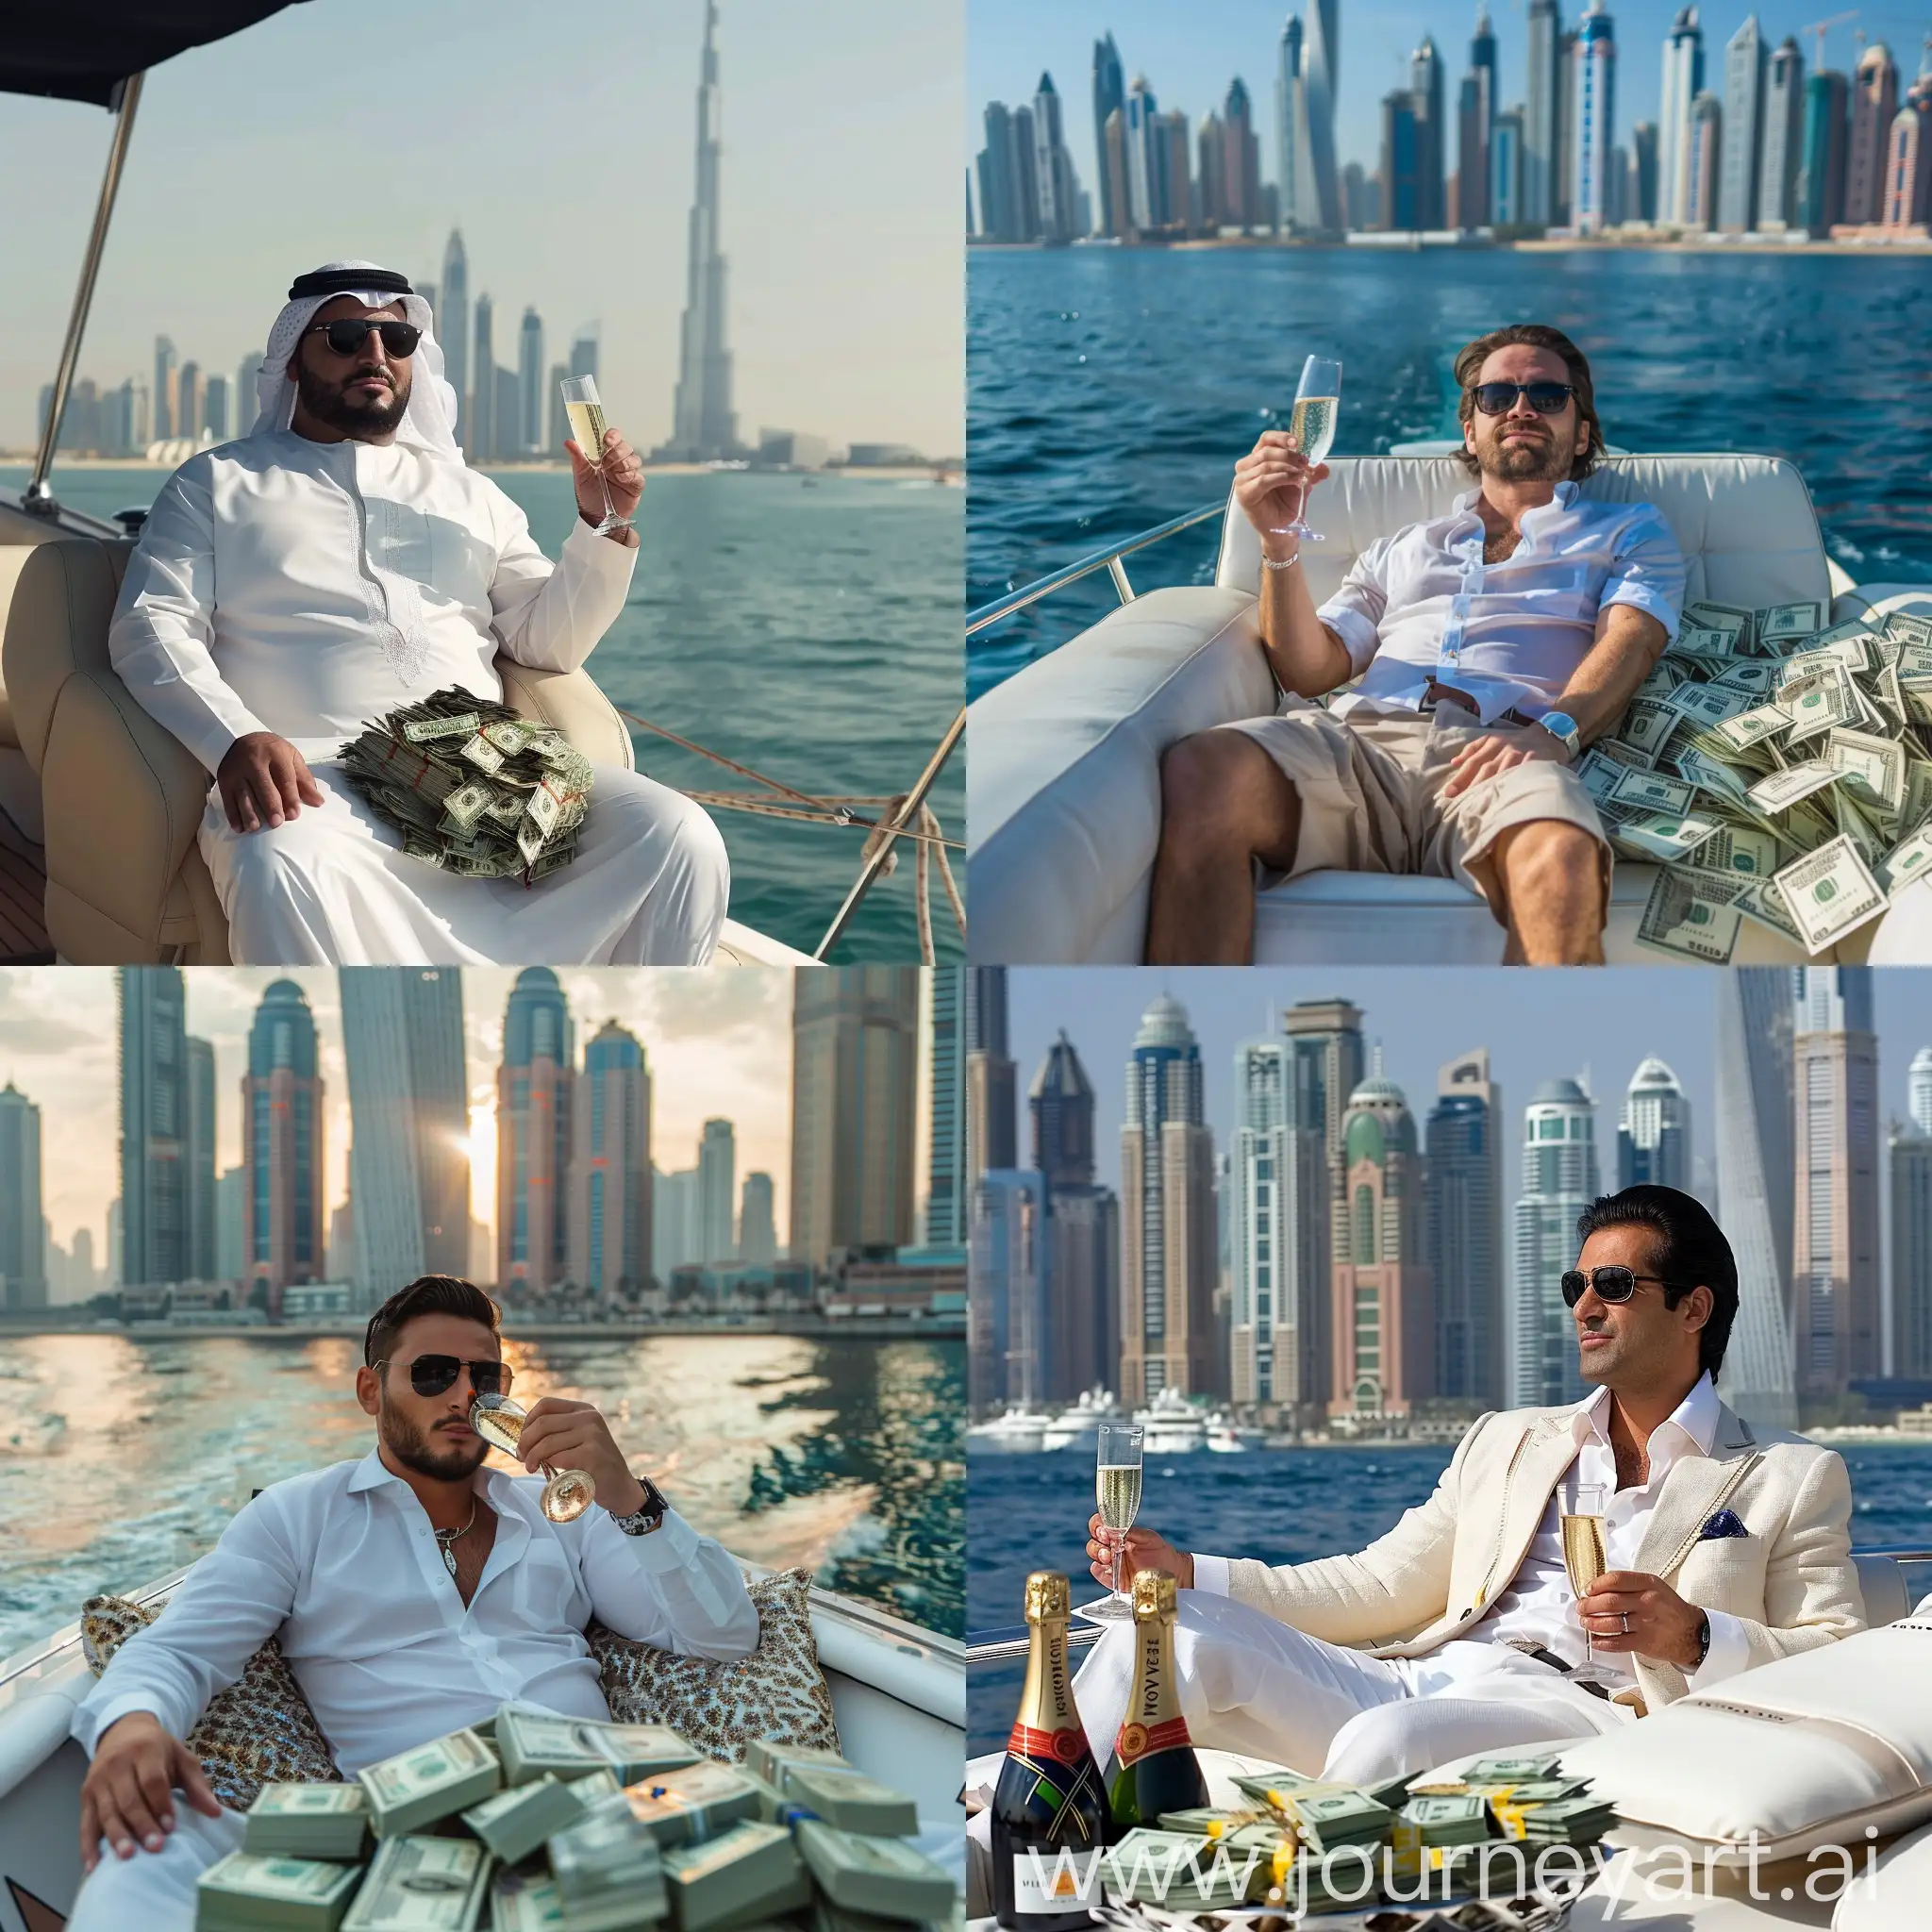 богатый мужчина сдит на яхте с кучей денег попивая шамапнское на фоне дубая